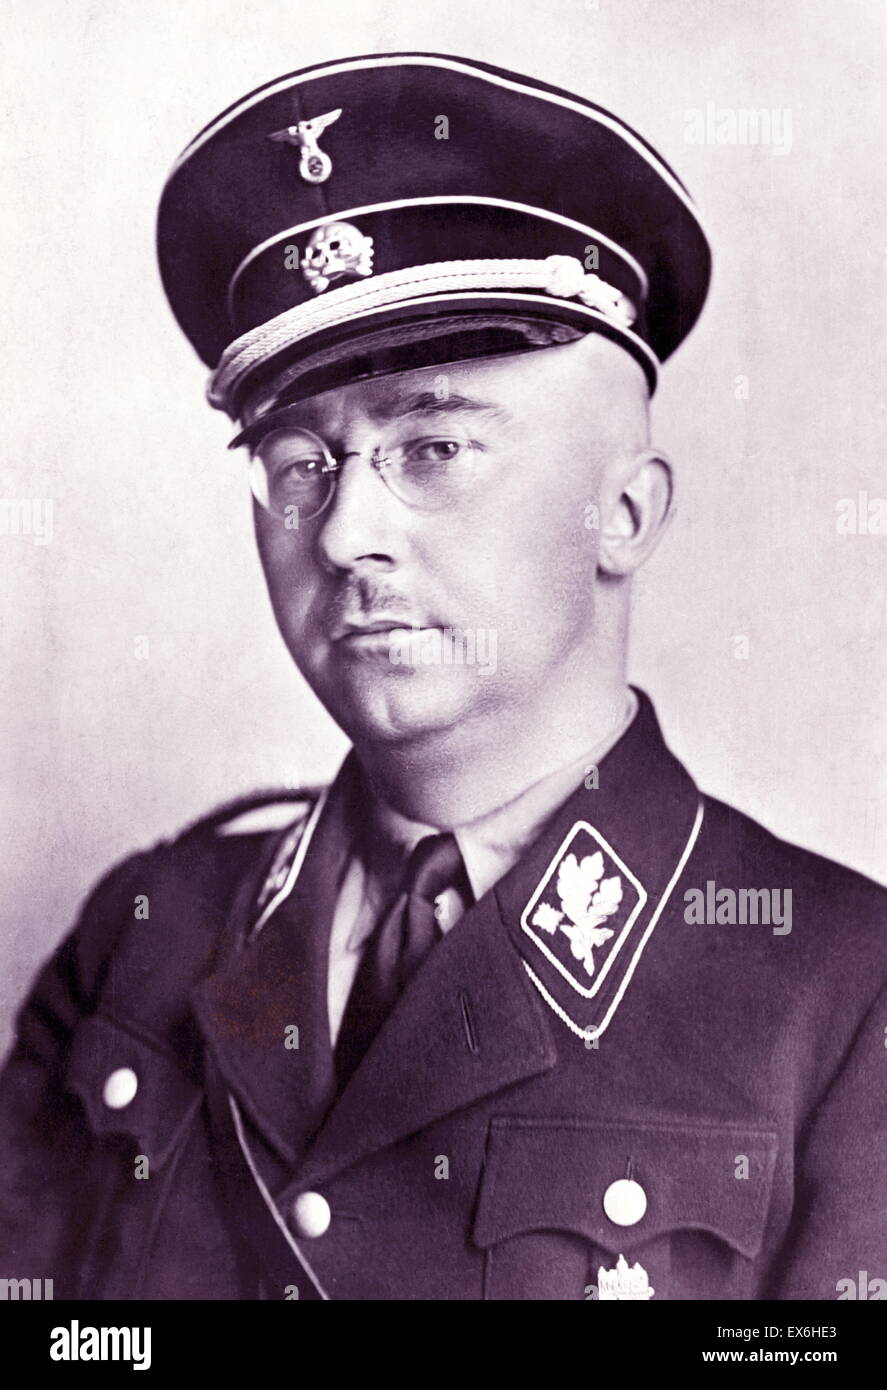 Heinrich Luitpold Himmler (1900 - 23 mai 1945) a été de l'Reichsführer Schutzstaffel (SS), un commandant militaire, et l'un des principaux membres du parti nazi (NSDAP) de l'Allemagne nazie Banque D'Images